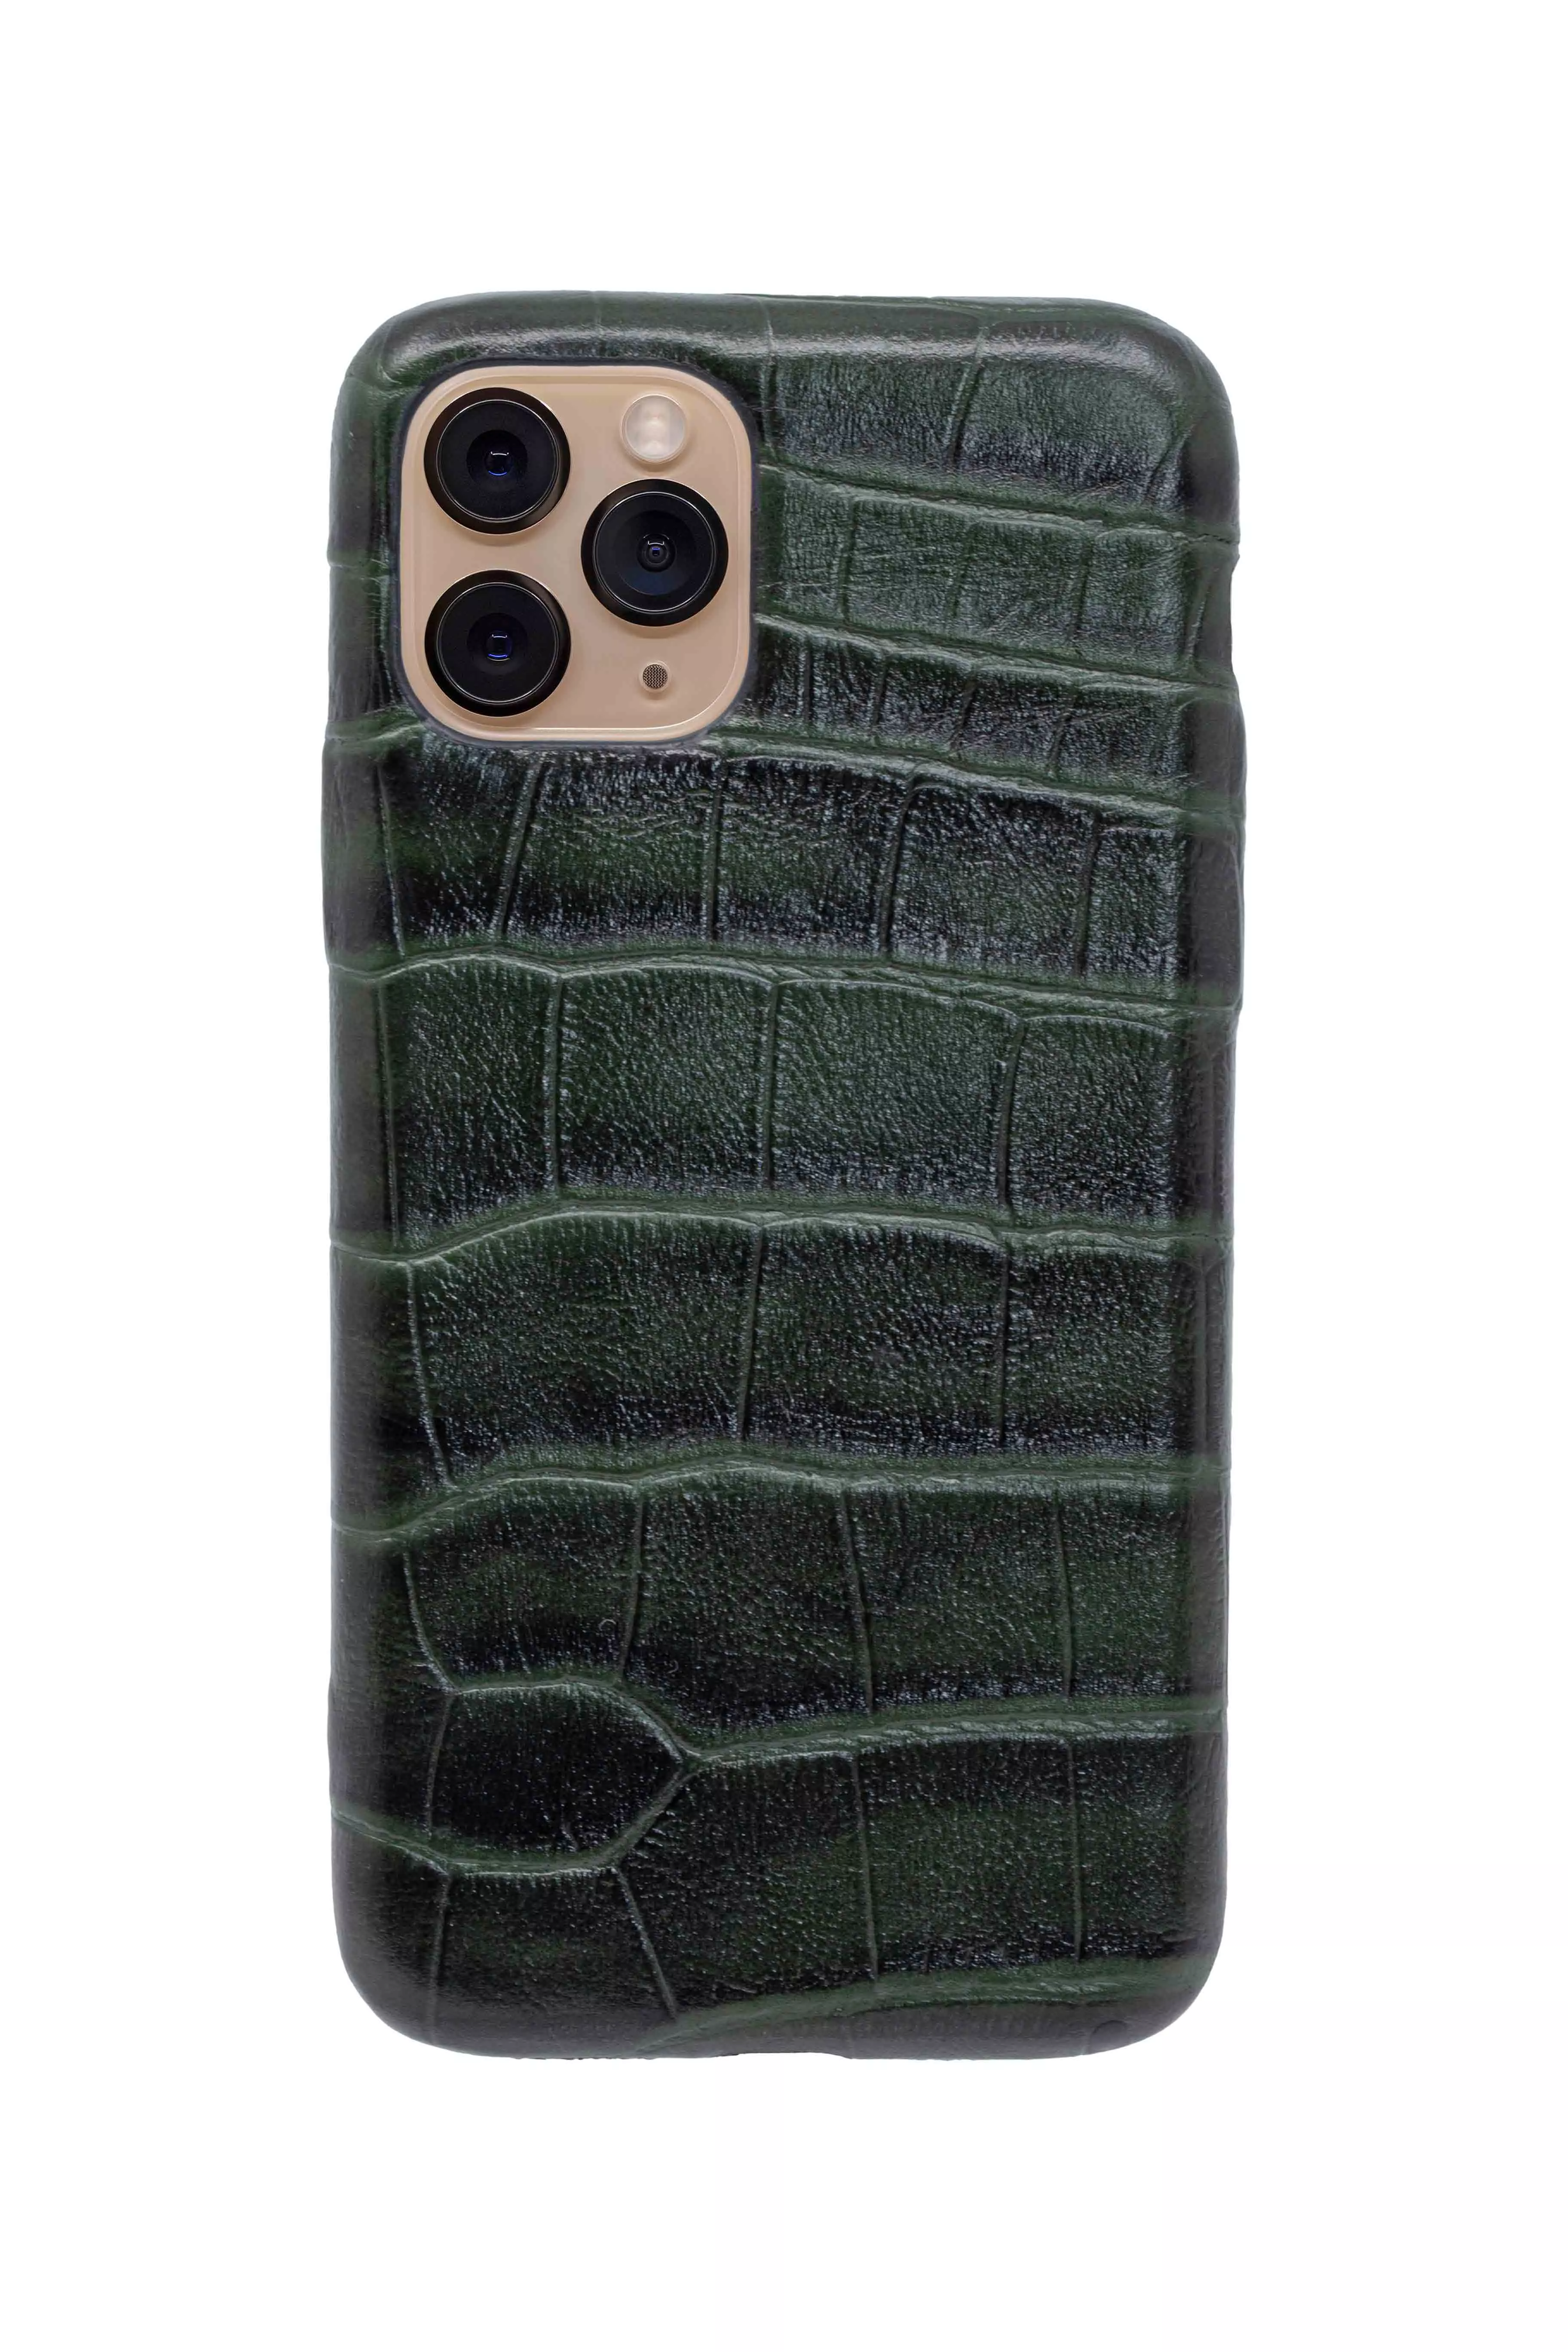 Чехол из натуральной кожи для iPhone 11 Pro - Cayman green. Вид 1